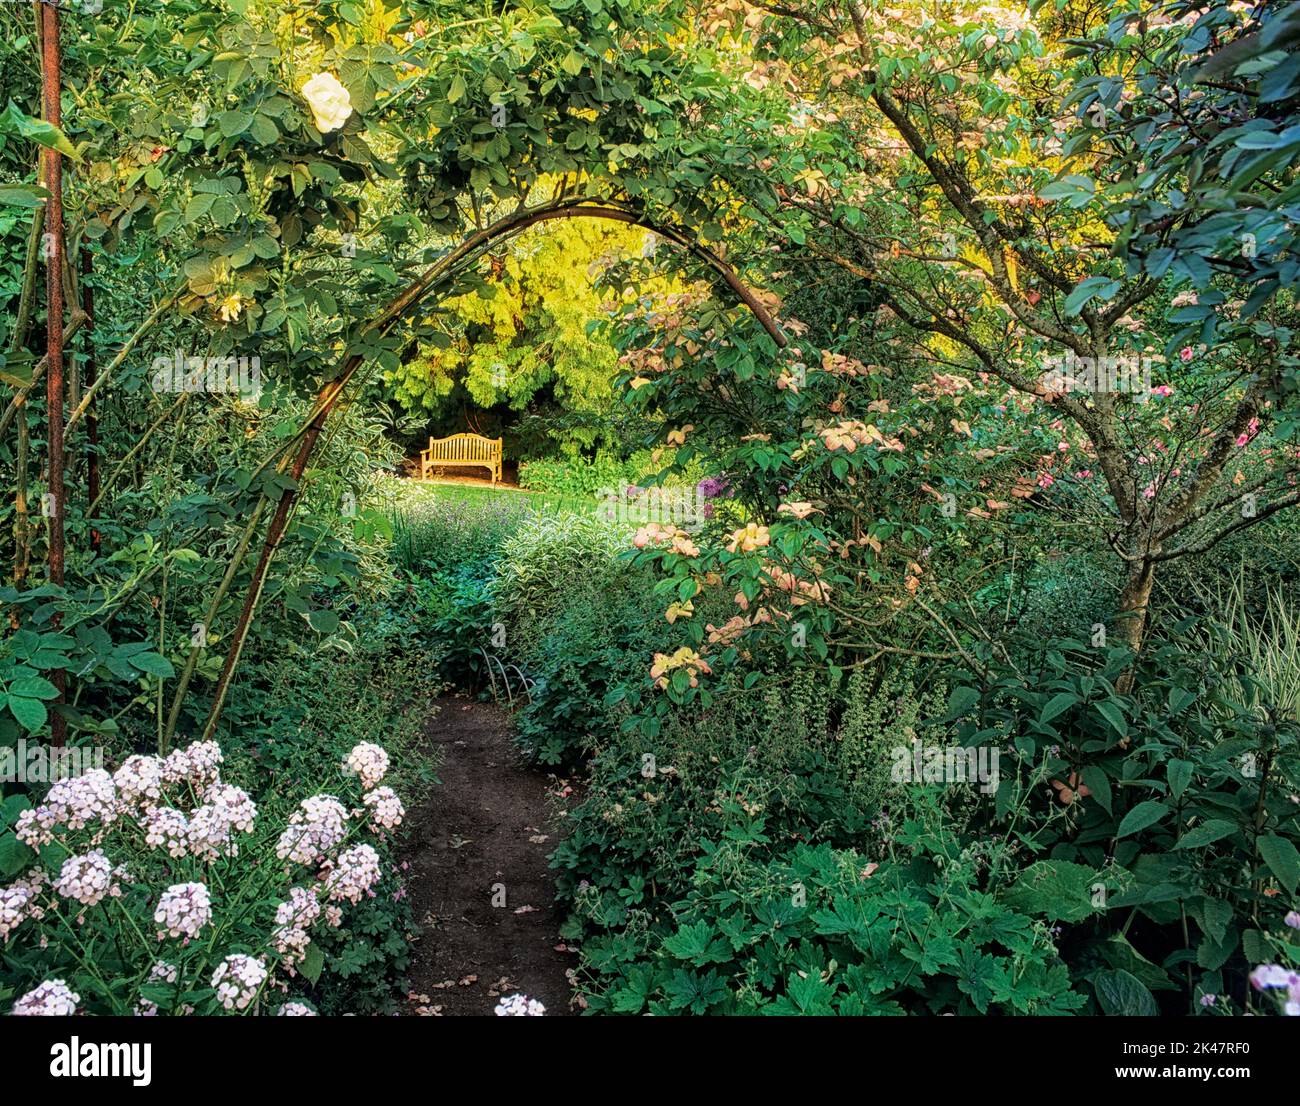 Chemin avec cornouiller, vigne rose et banc. Jardin botanique de Bellevue, Bellevue, Washington Banque D'Images